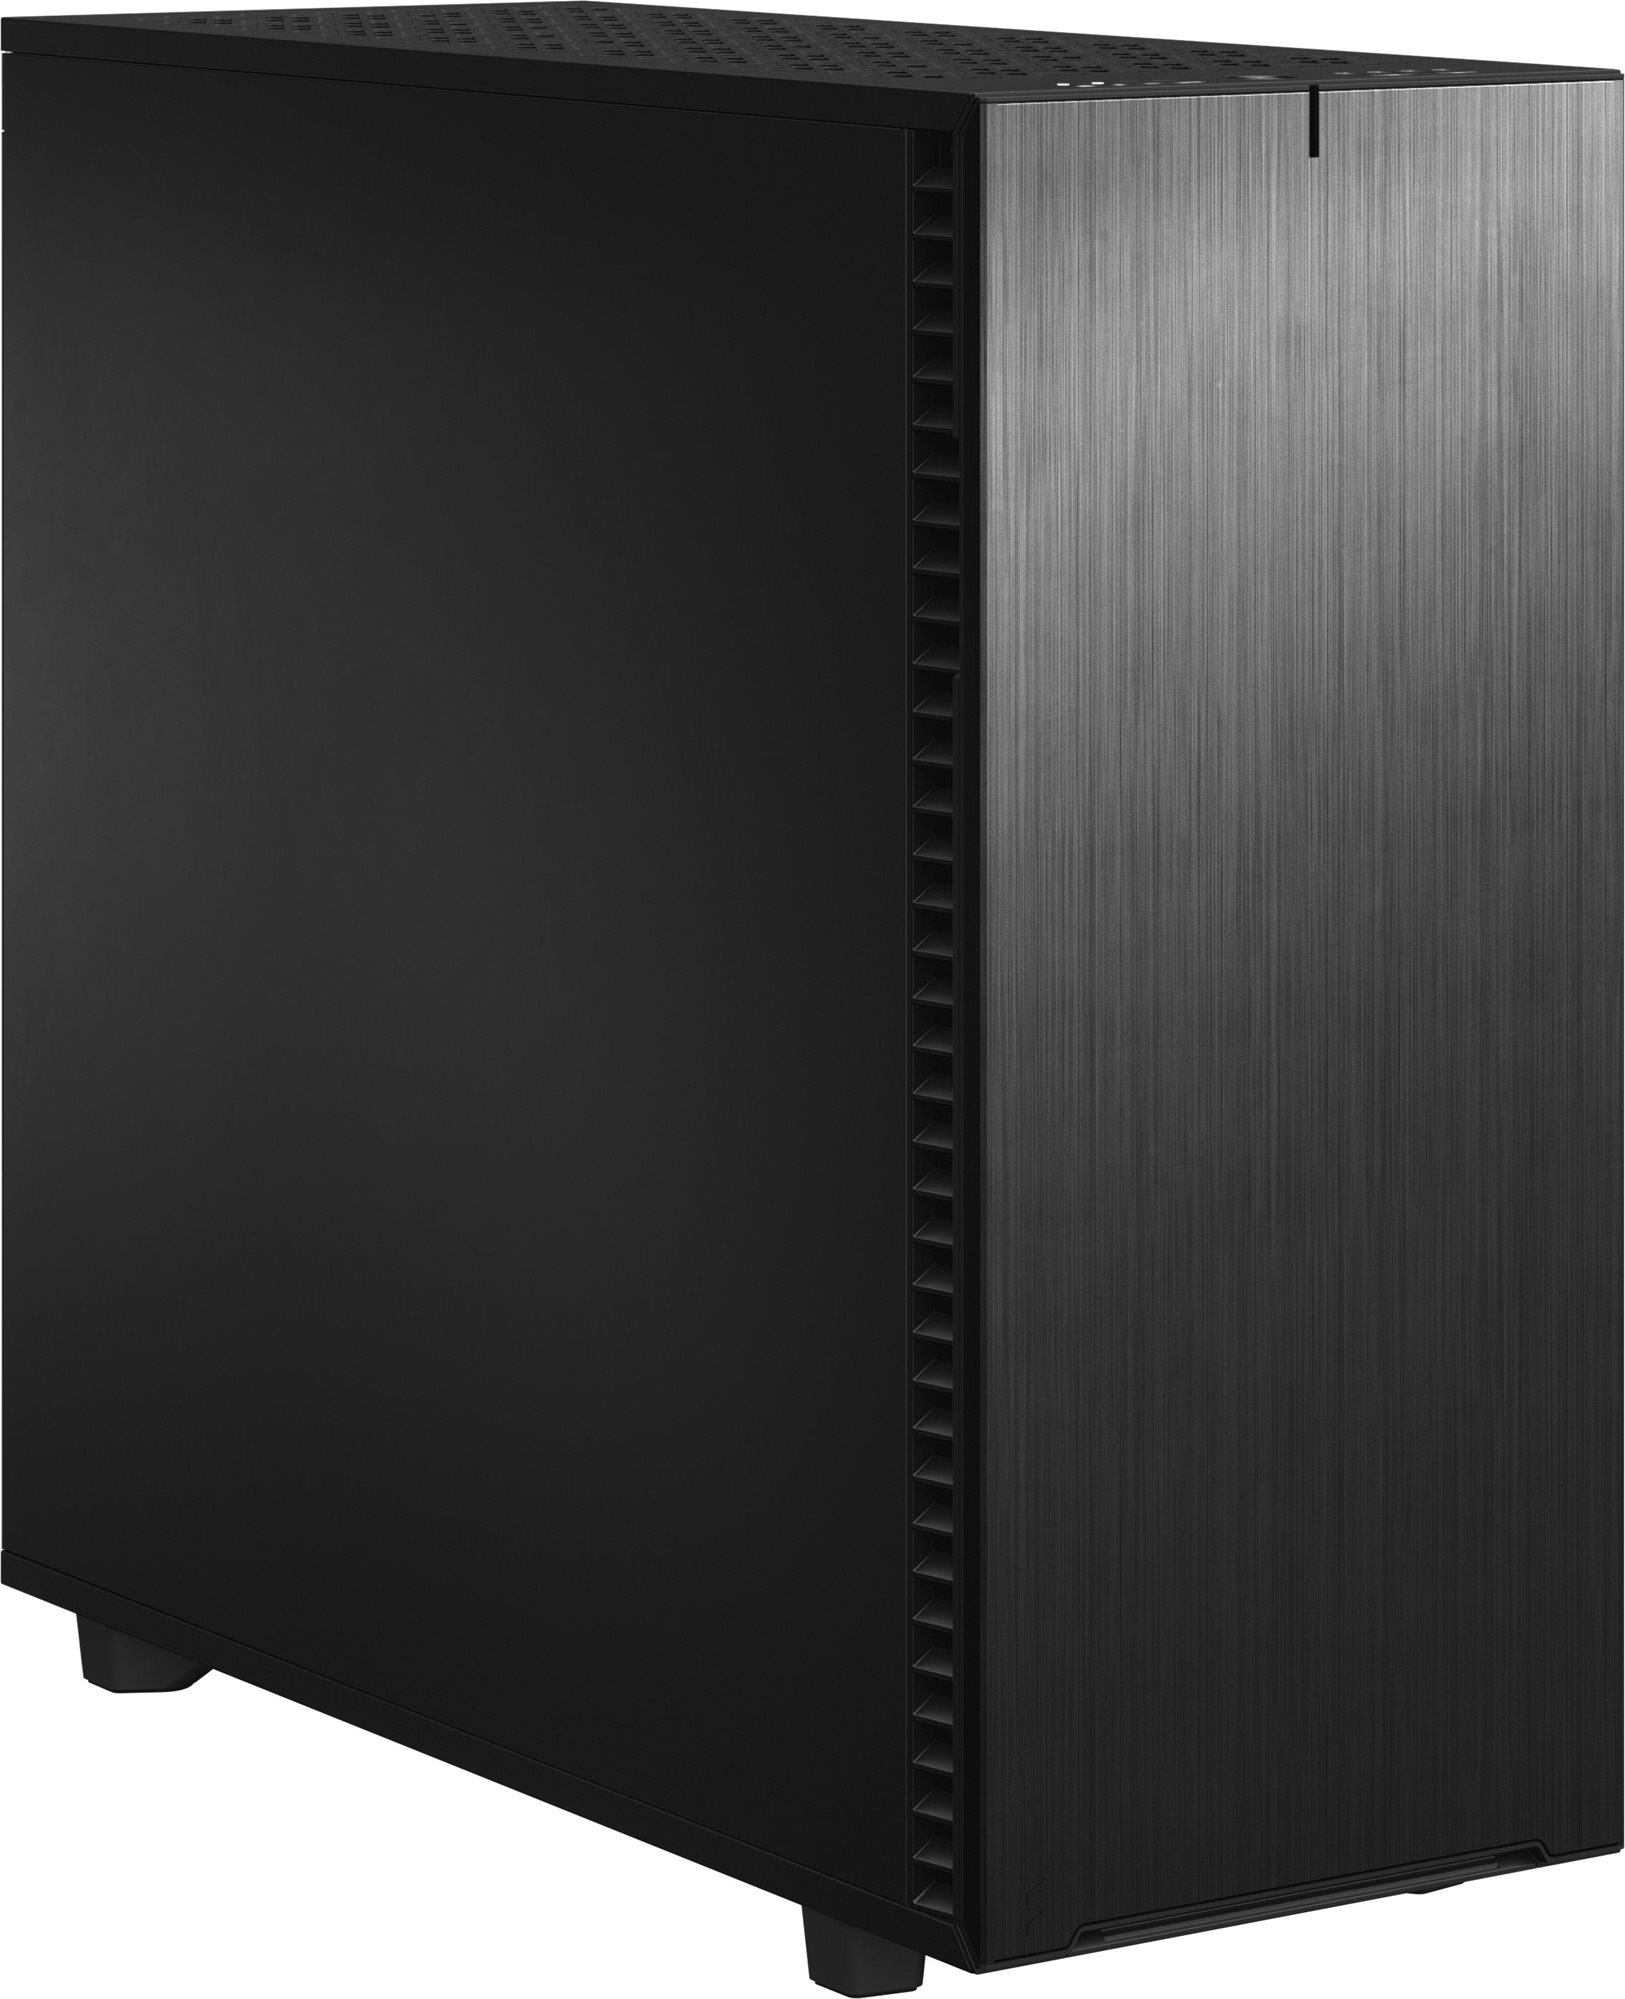 Számítógépház Fractal Design Define 7 XL Black